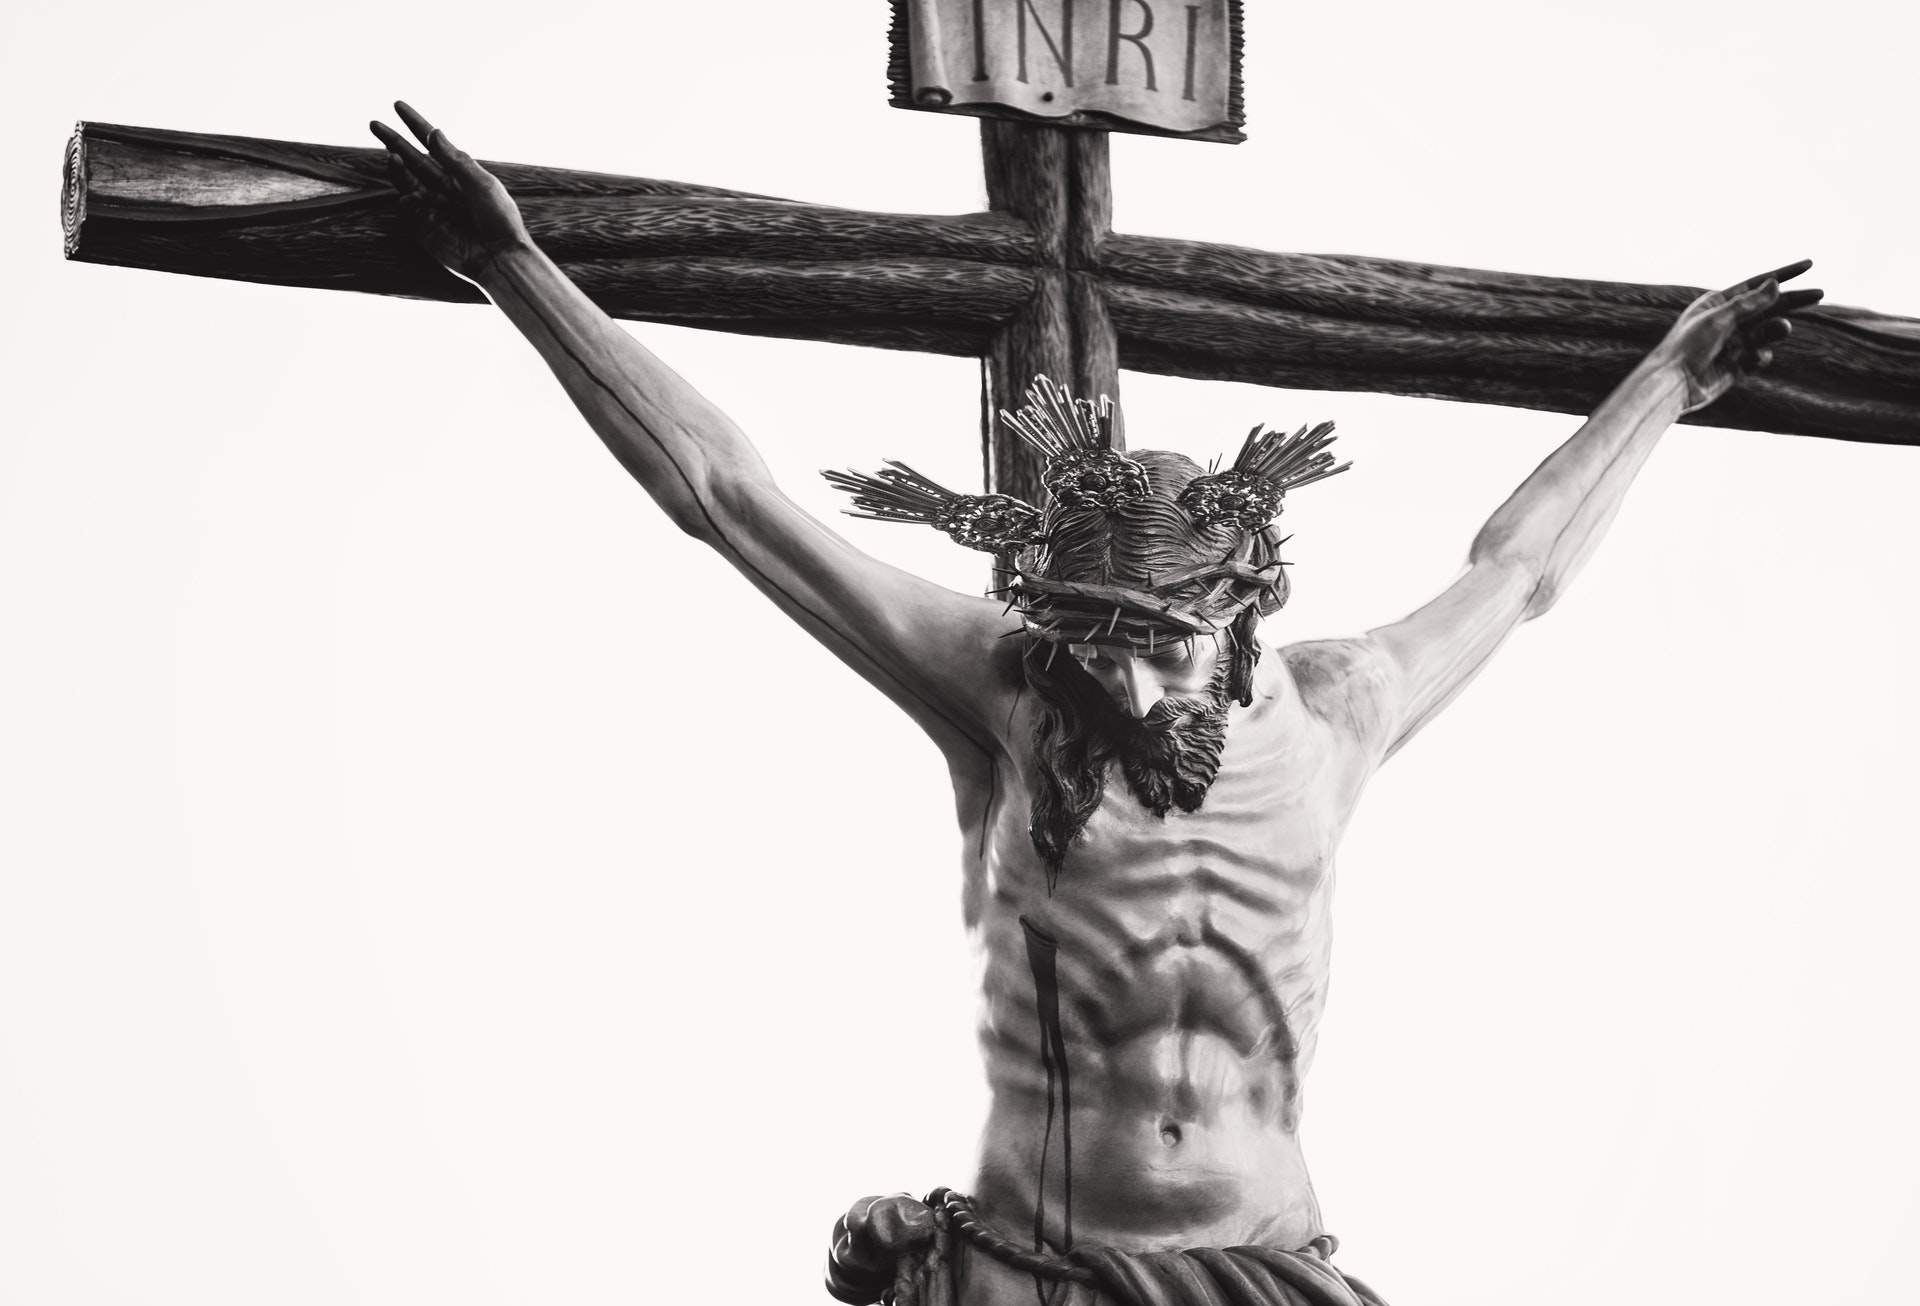 Jesus on cross wearing crown of thorns